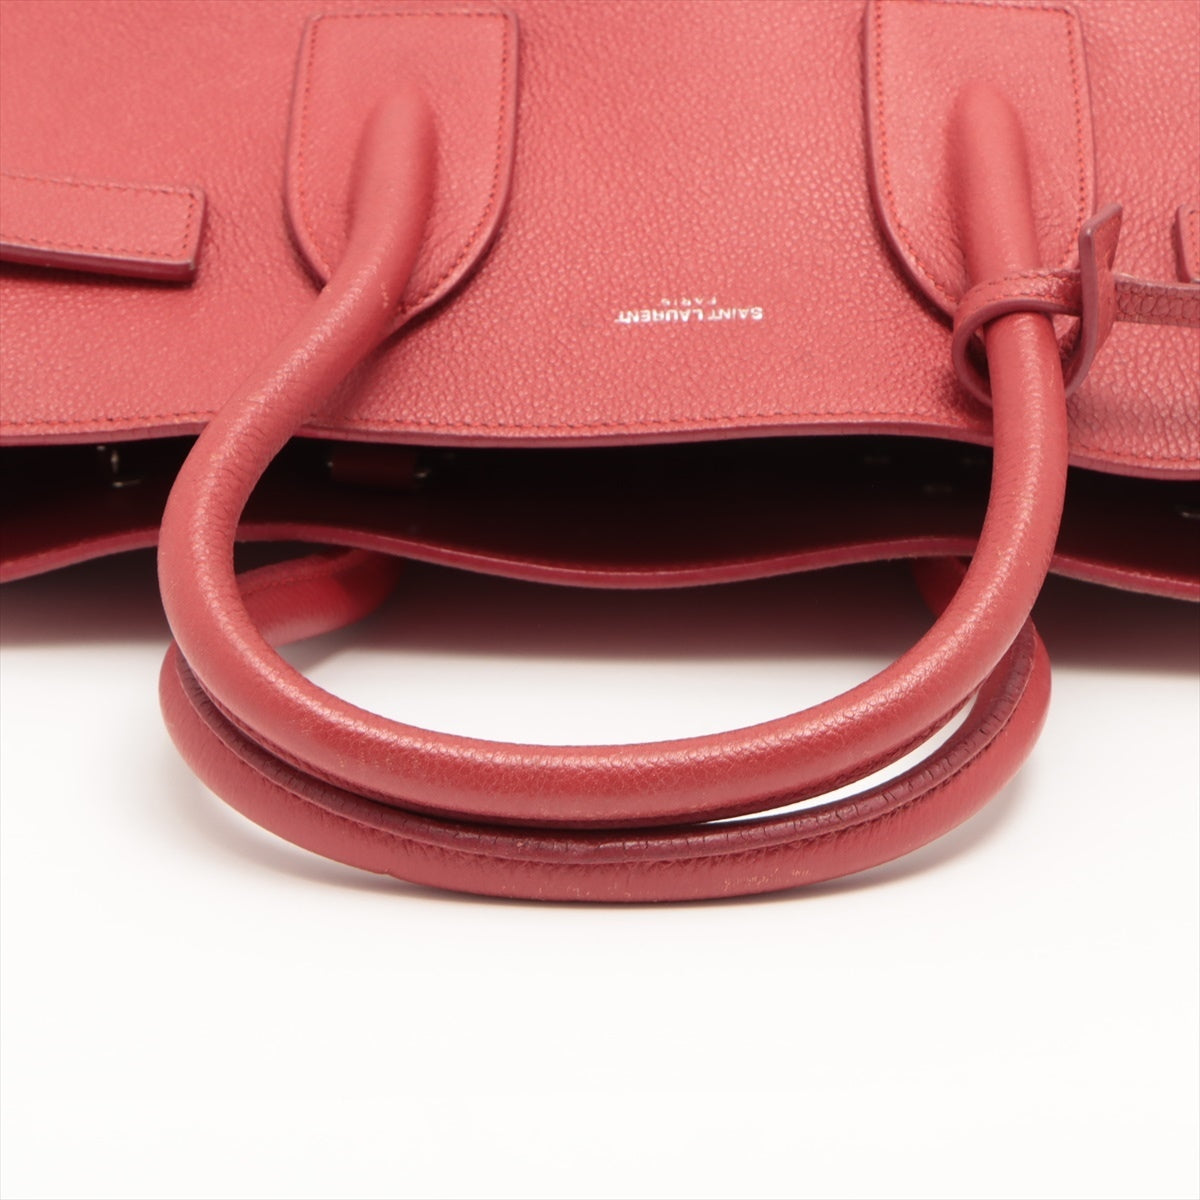 Saint Laurent Paris Sac de Jour Leather 2 Way Handbag Red 378299